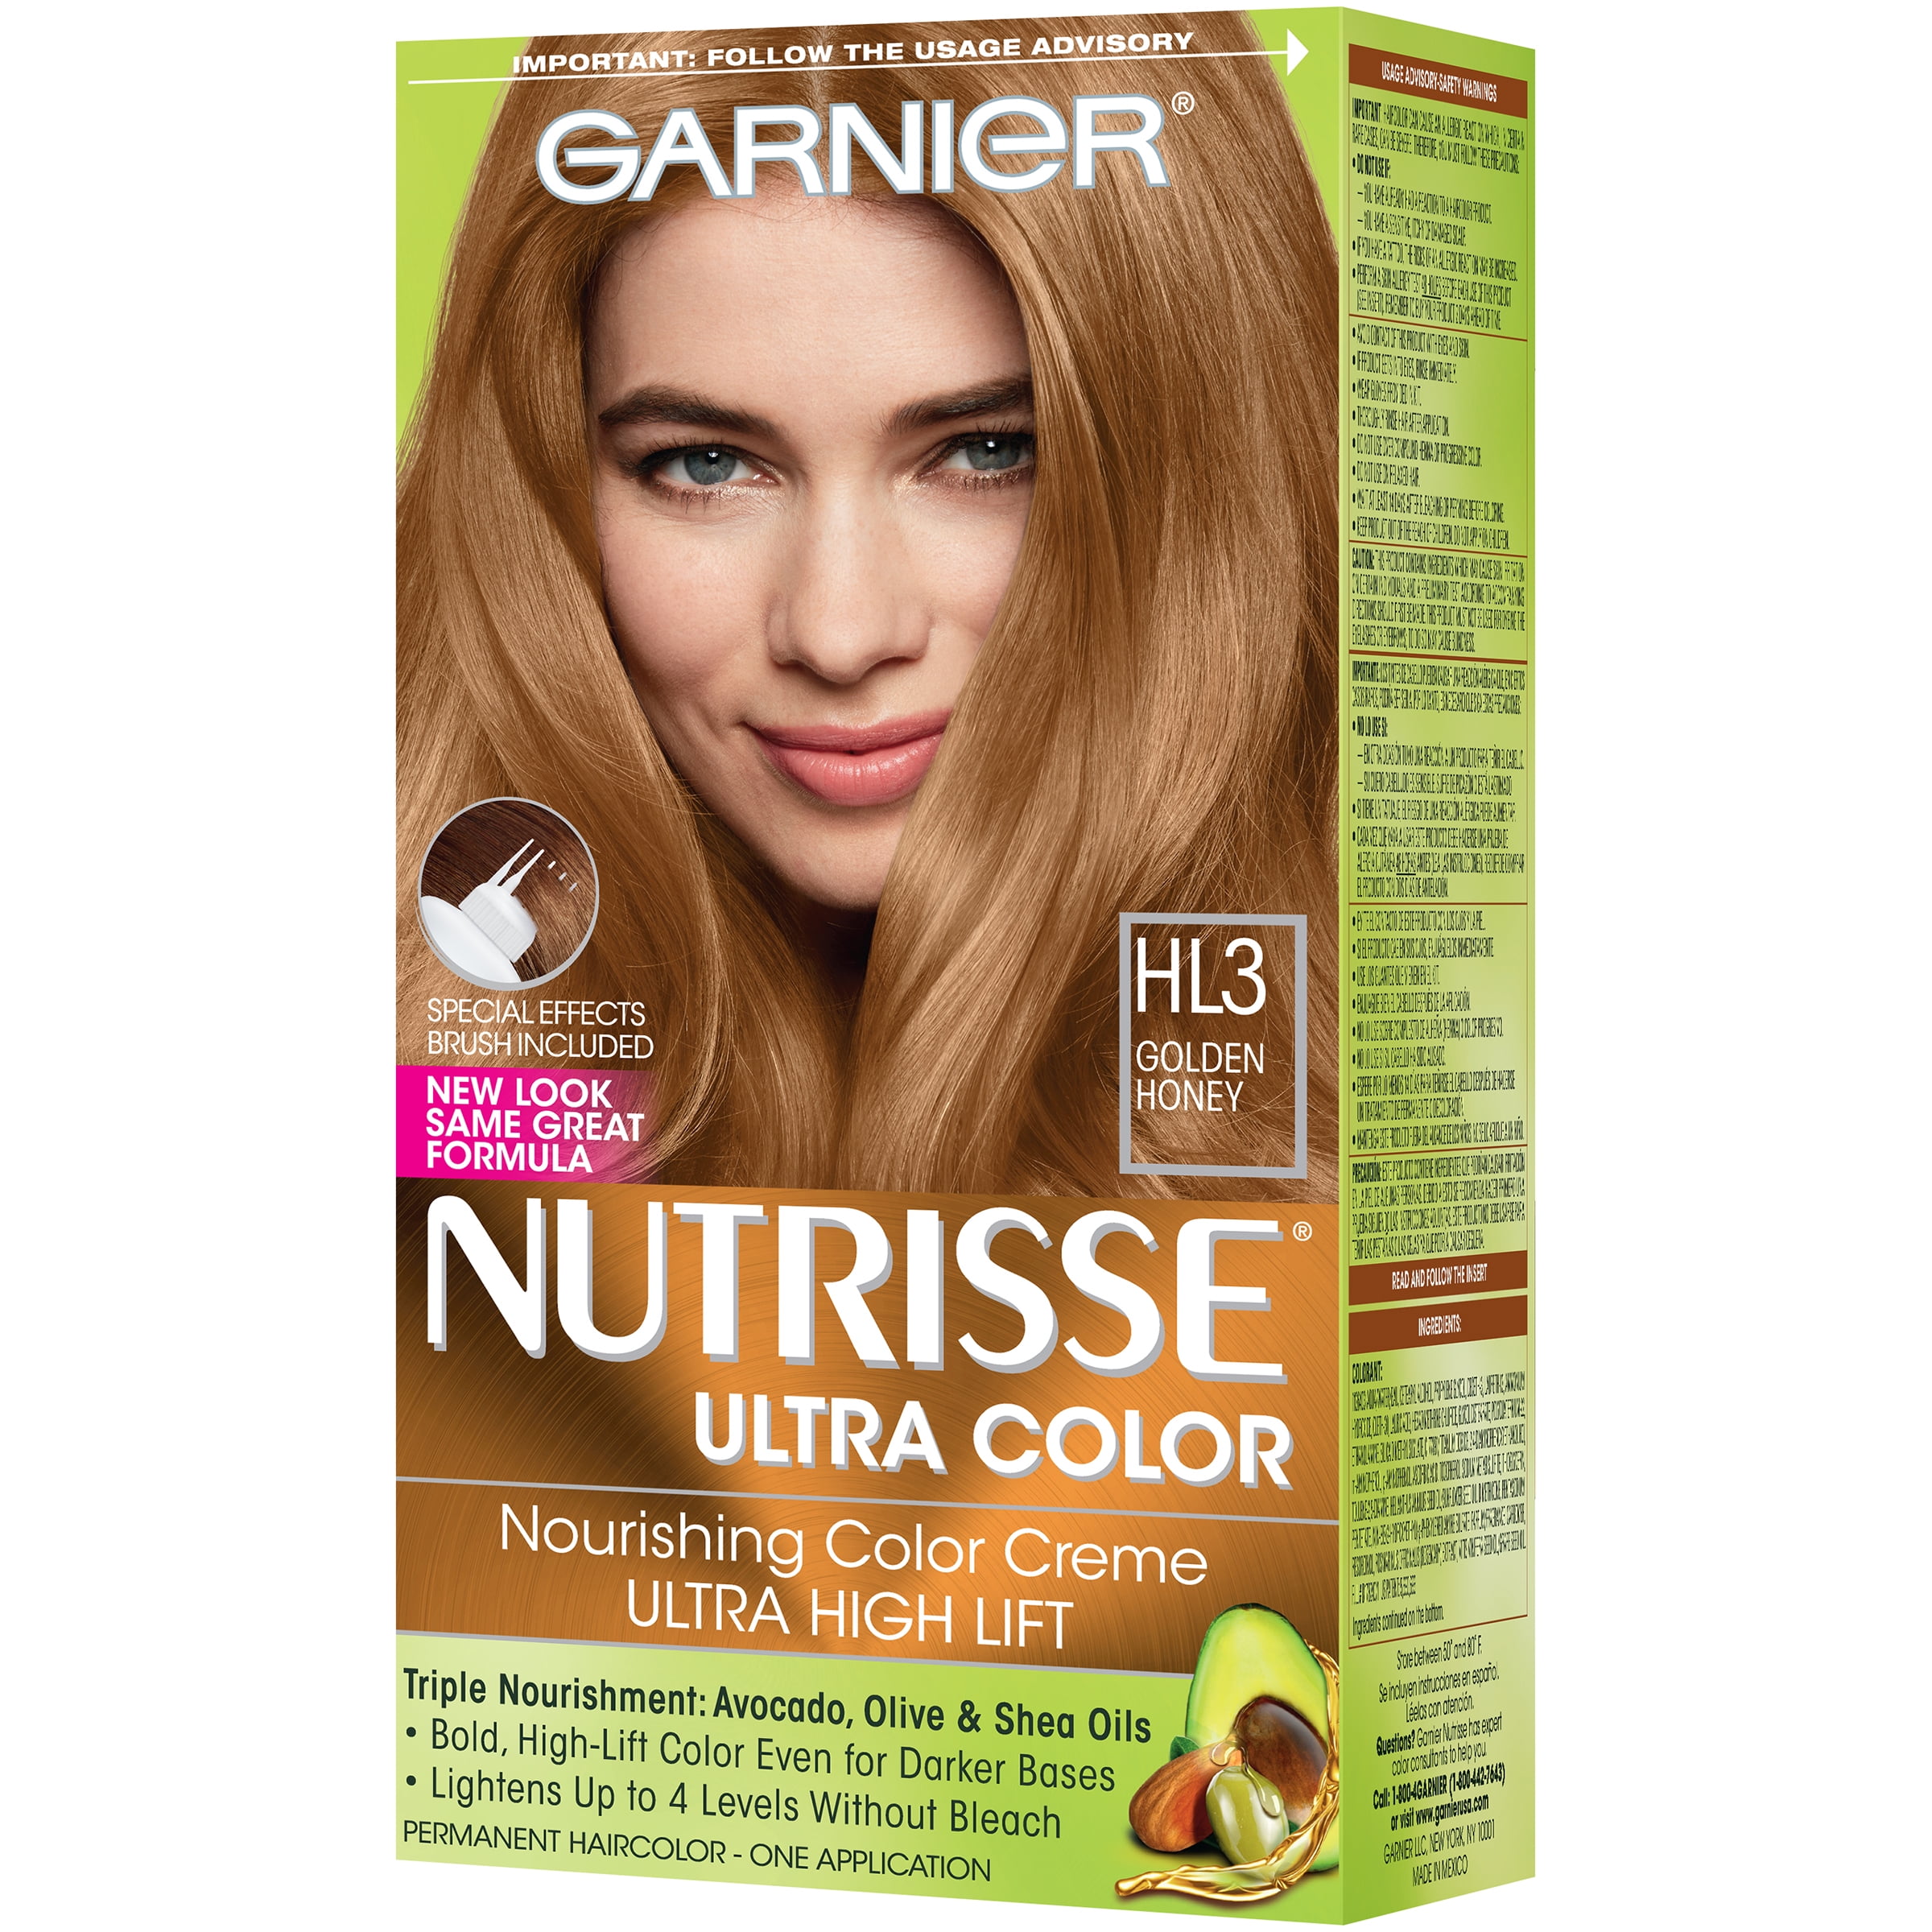 Nourishing Hair Honey Golden HL3 Garnier Permanent Color Bold Creme, Ultra Nutrisse Color